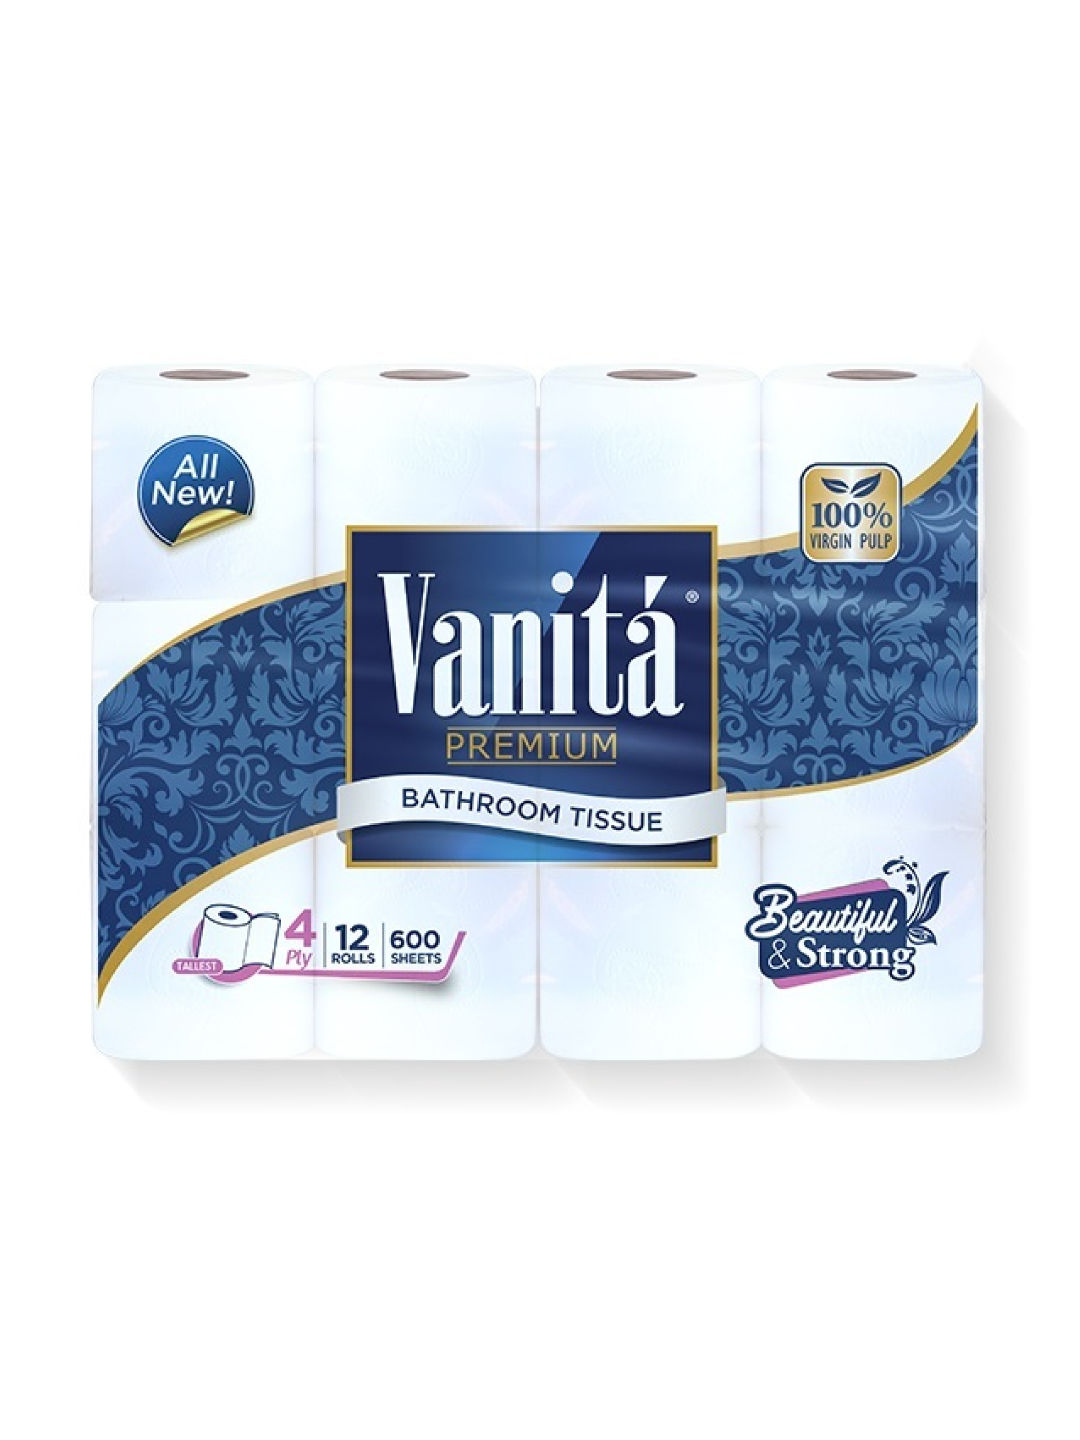 Vanita Premium Bathroom Tissue 4-Ply (12 Rolls)